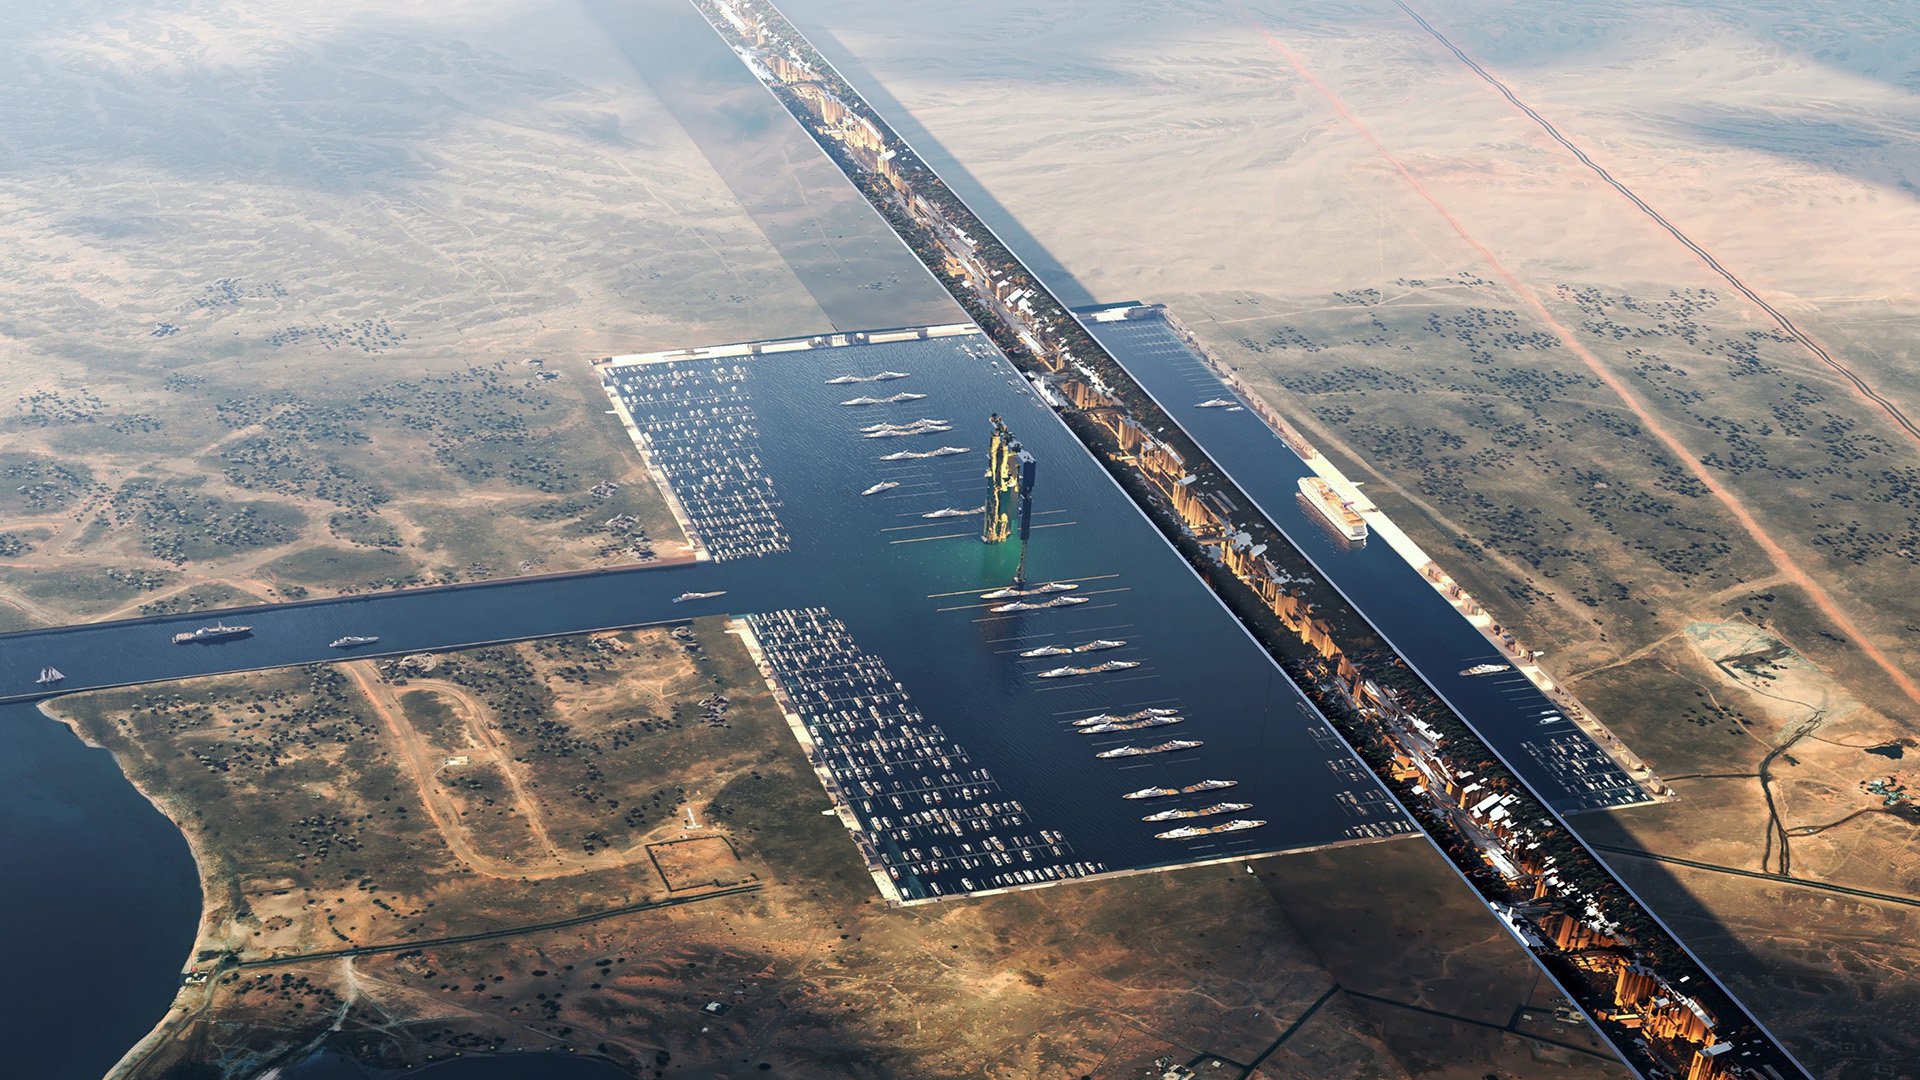 new images revealed of saudi arabia's £1,000,000,000,000 mega city